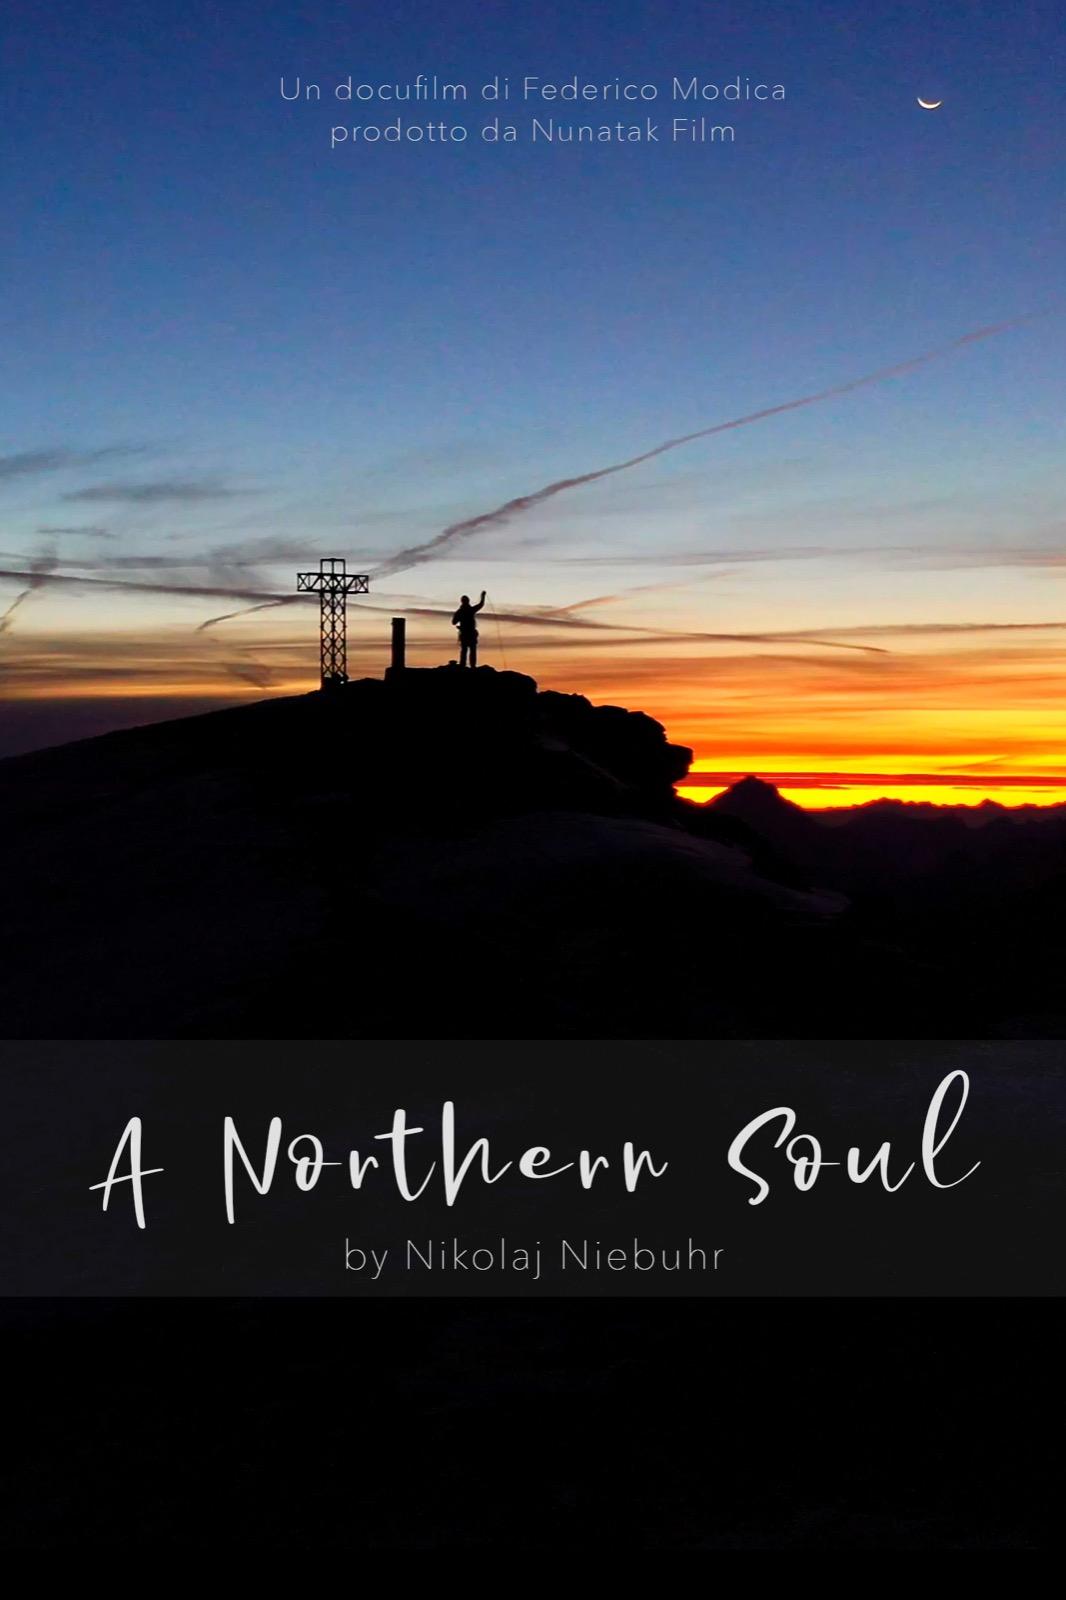 locandina di "A Northern Soul"